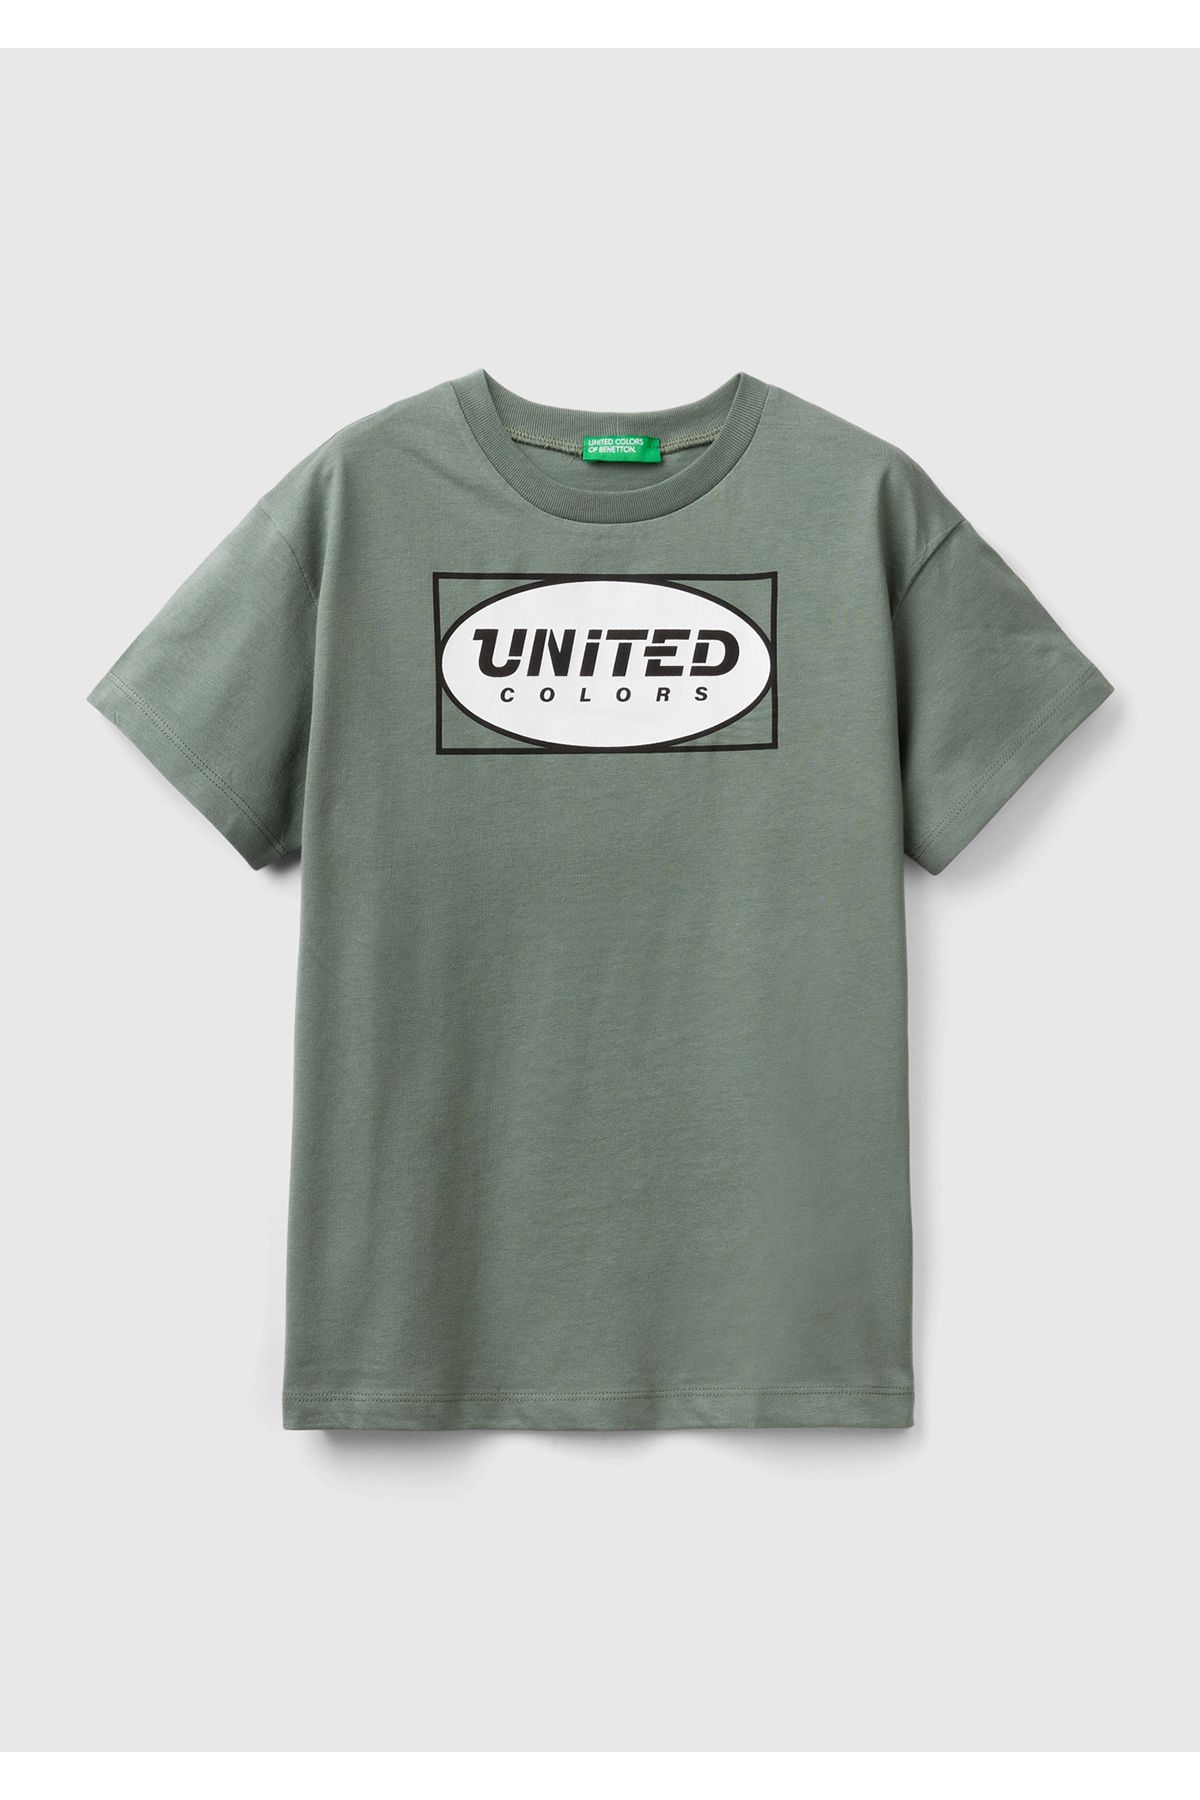 United Colors of Benetton Erkek Çocuk Asker Yeşili Benetton Yazılı Yaz T-Shirt